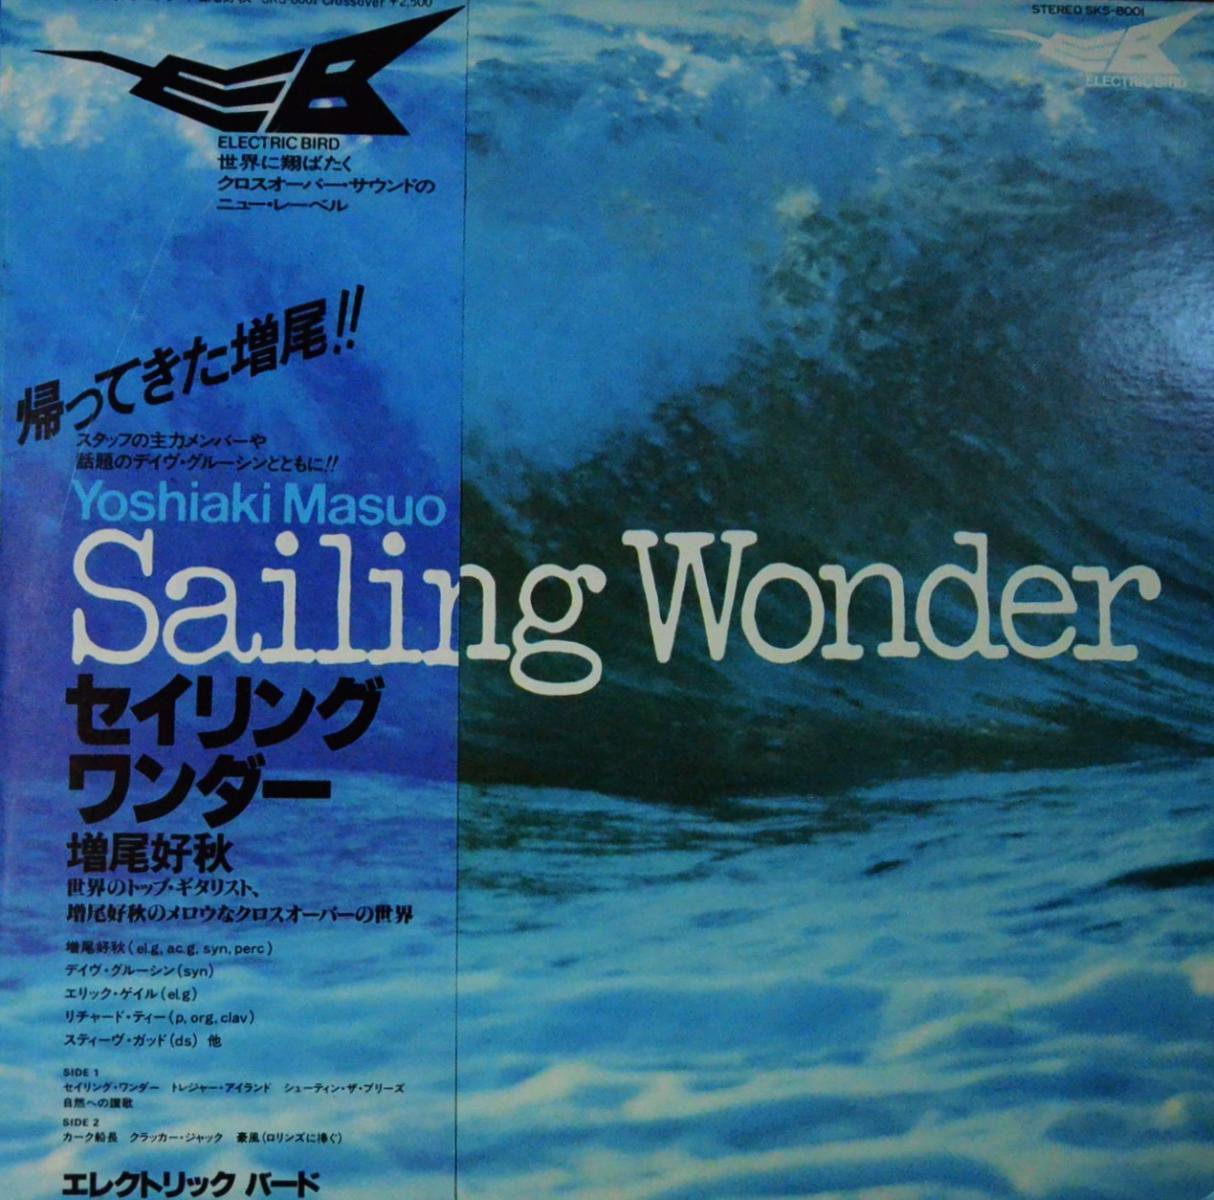 増尾好秋 YOSHIAKI MASUO / セイリング・ワンダー SAILING WONDER (LP)